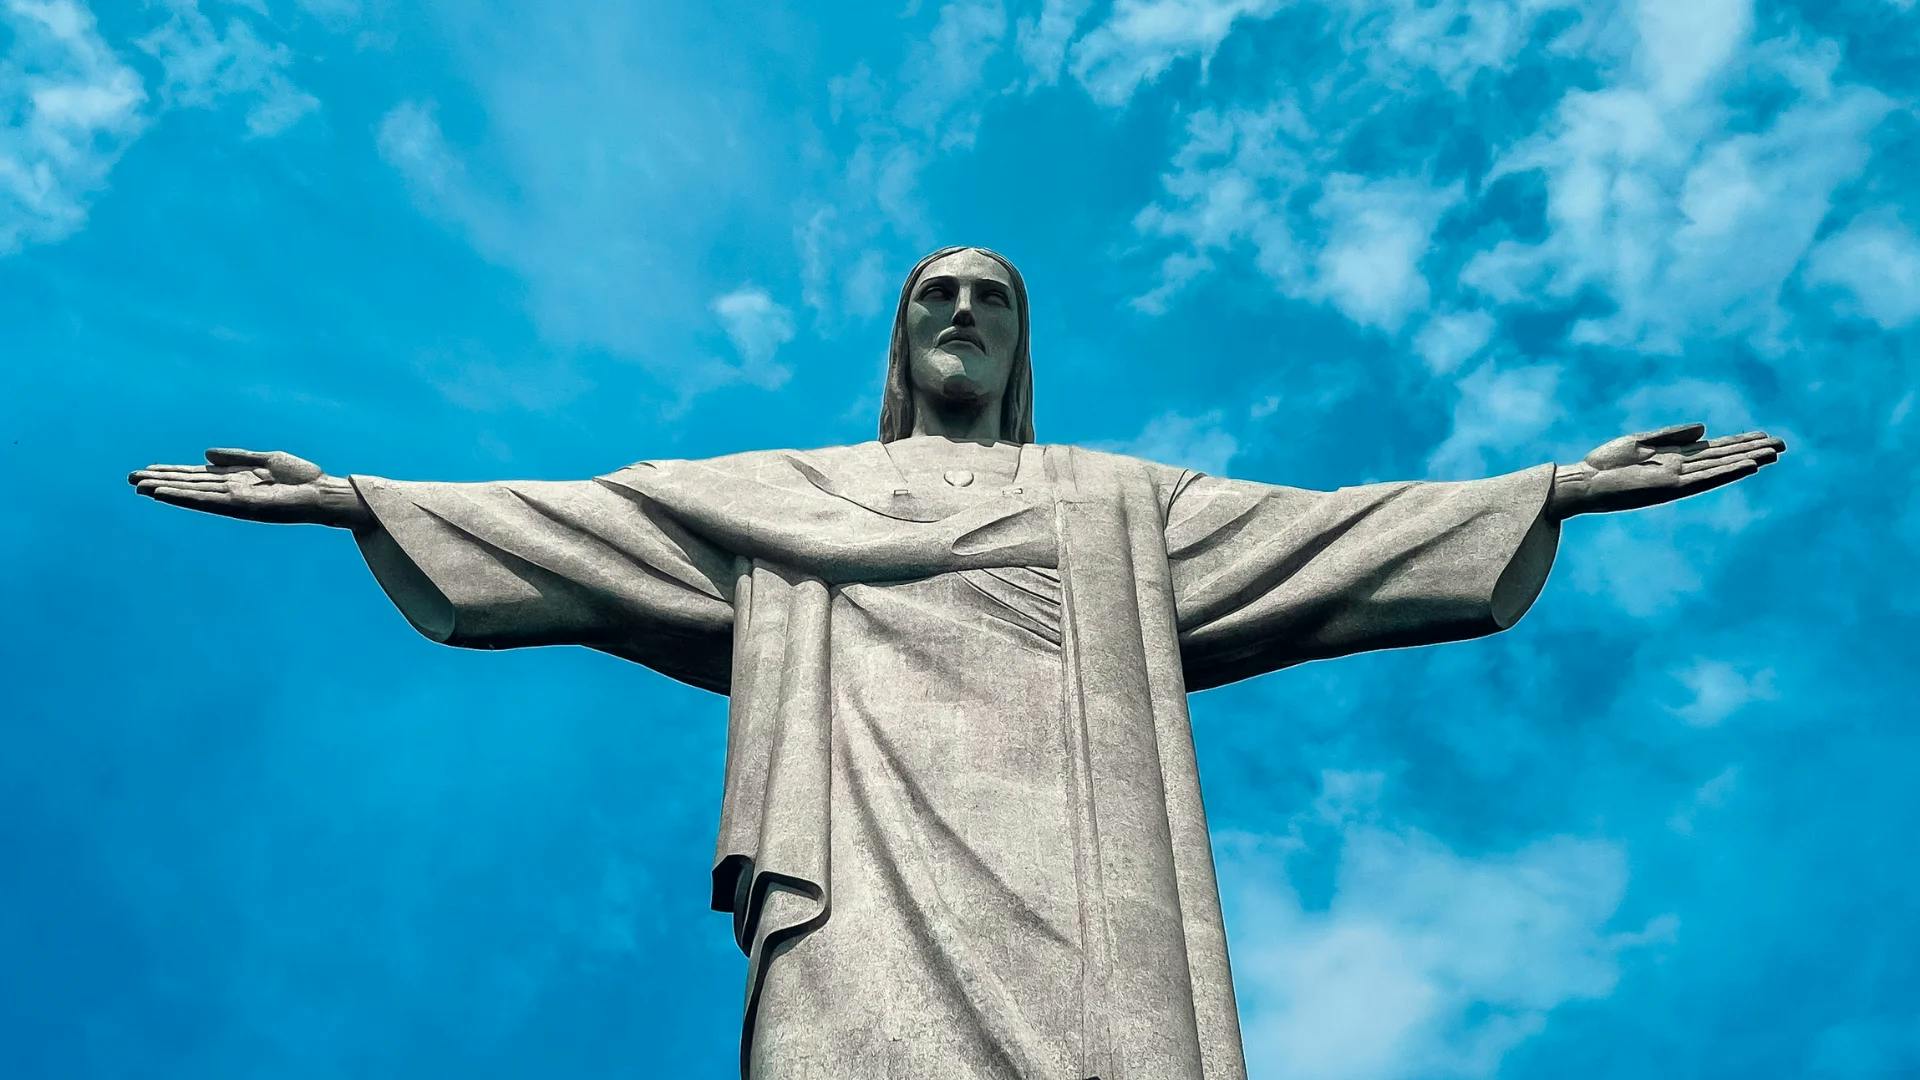 Conheça os principais pontos turísticos do Rio de Janeiro com o City Tour